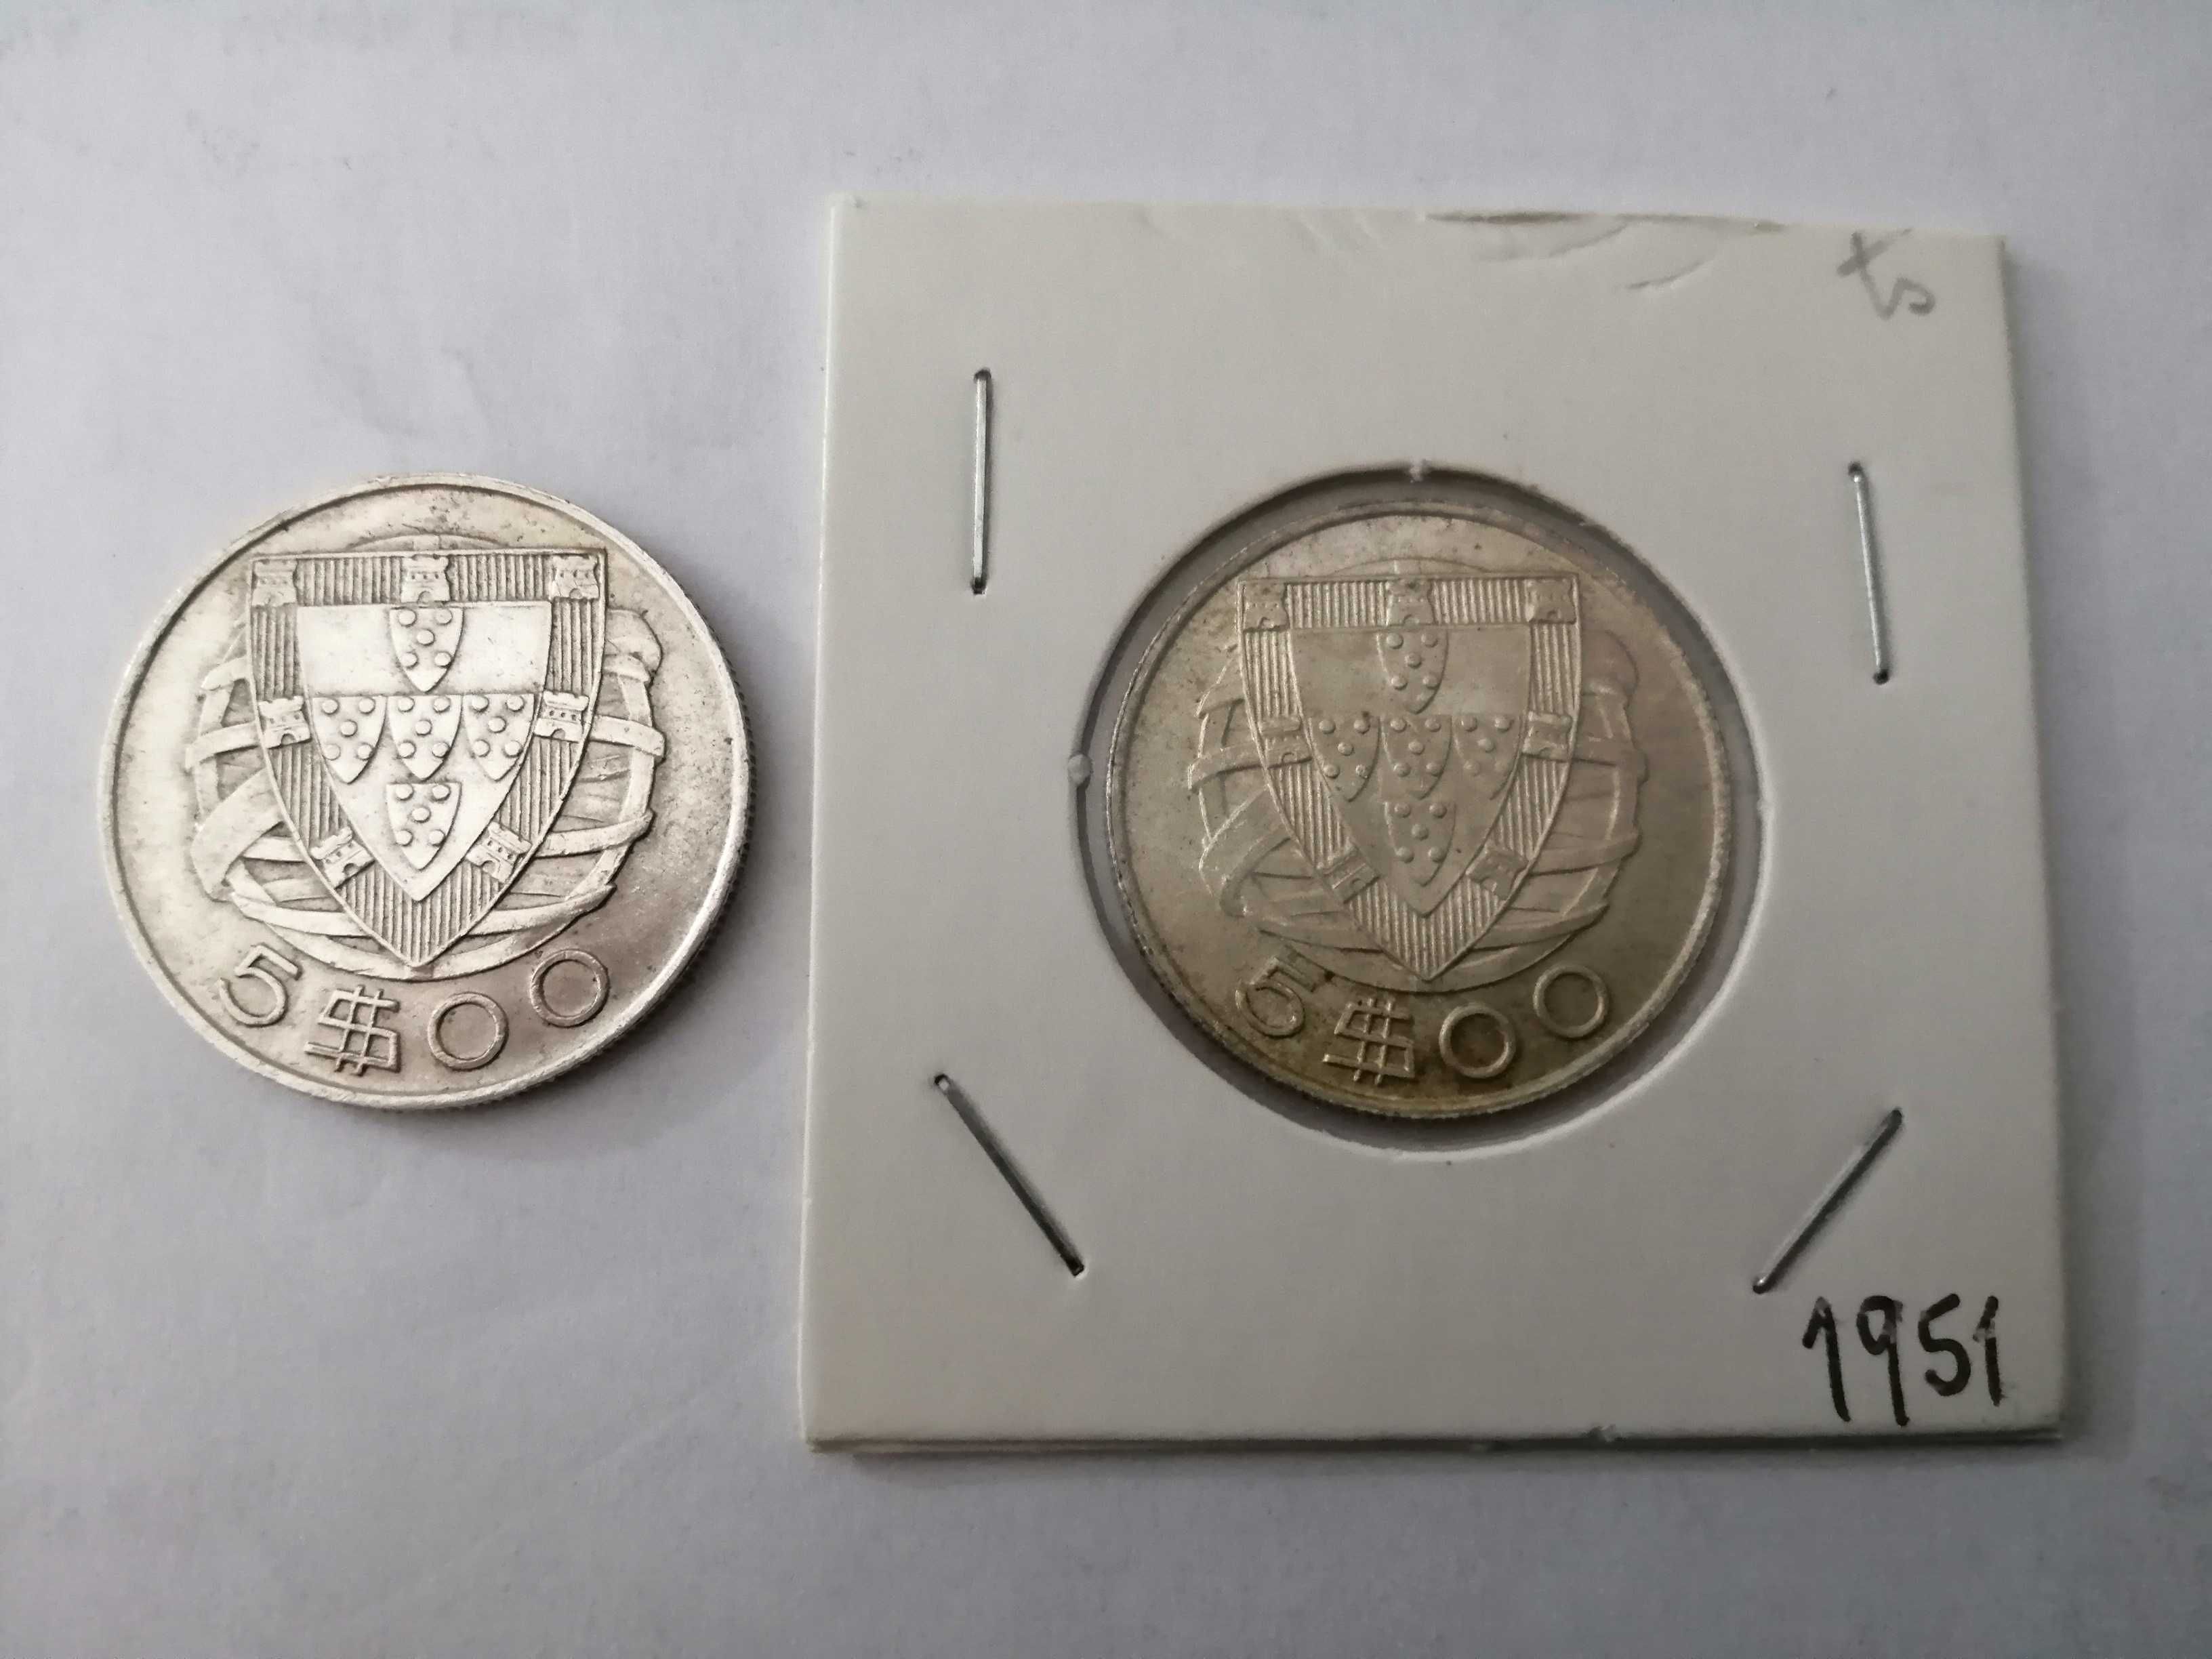 Moedas caravelas prata 1947, e 1951